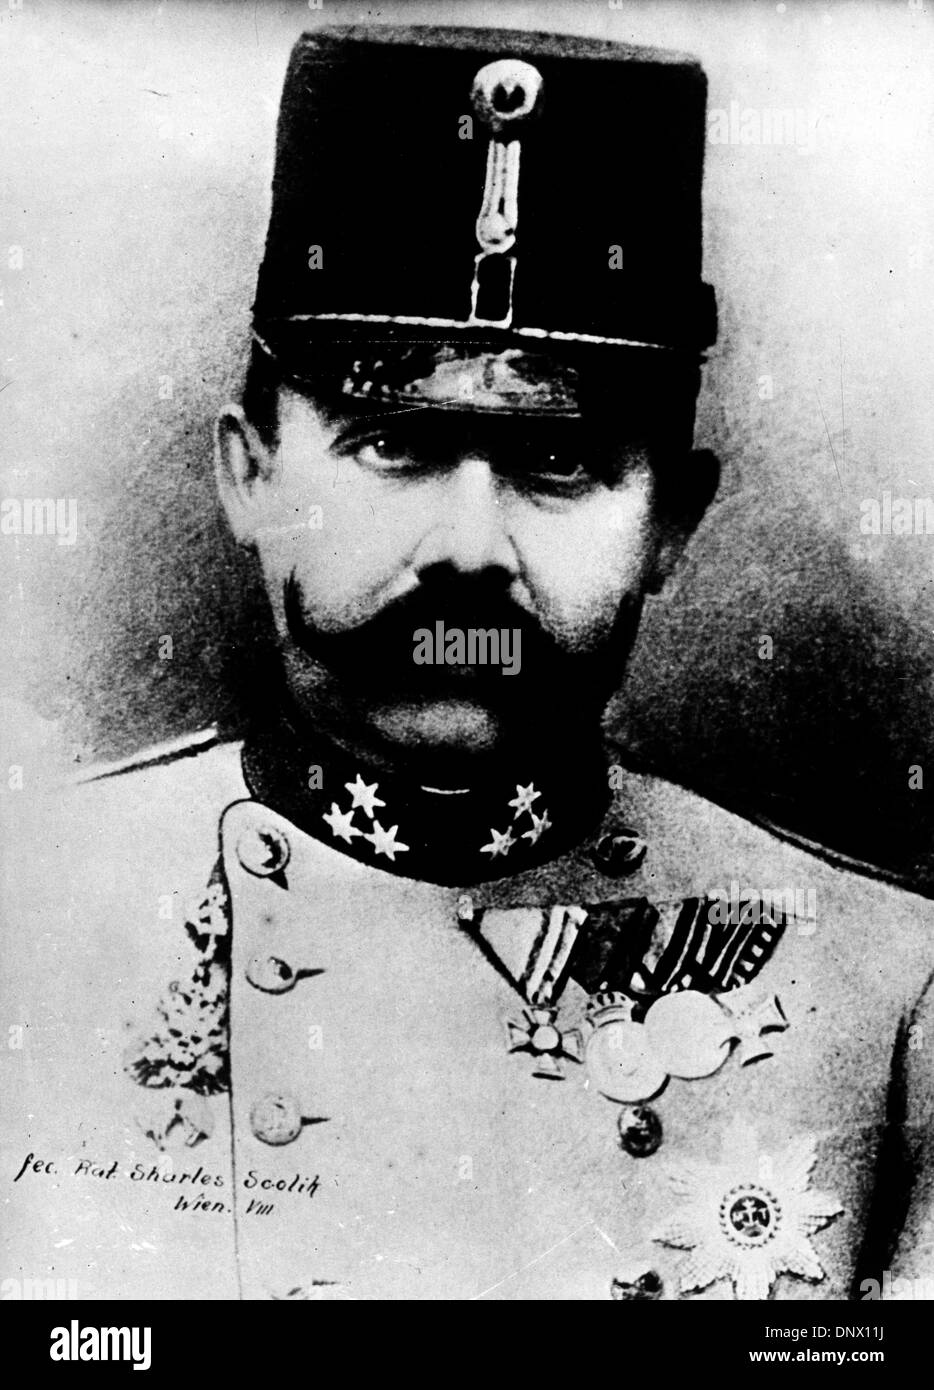 Mayo 11, 1912 - Viena, Austria; -Retrato del Archiduque Francisco Fernando de Austria, quien fue asesinado en Sarajevo el 28 de junio de 1914. (Crédito de la Imagen: © KEYSTONE Pictures/ZUMAPRESS.com) Foto de stock